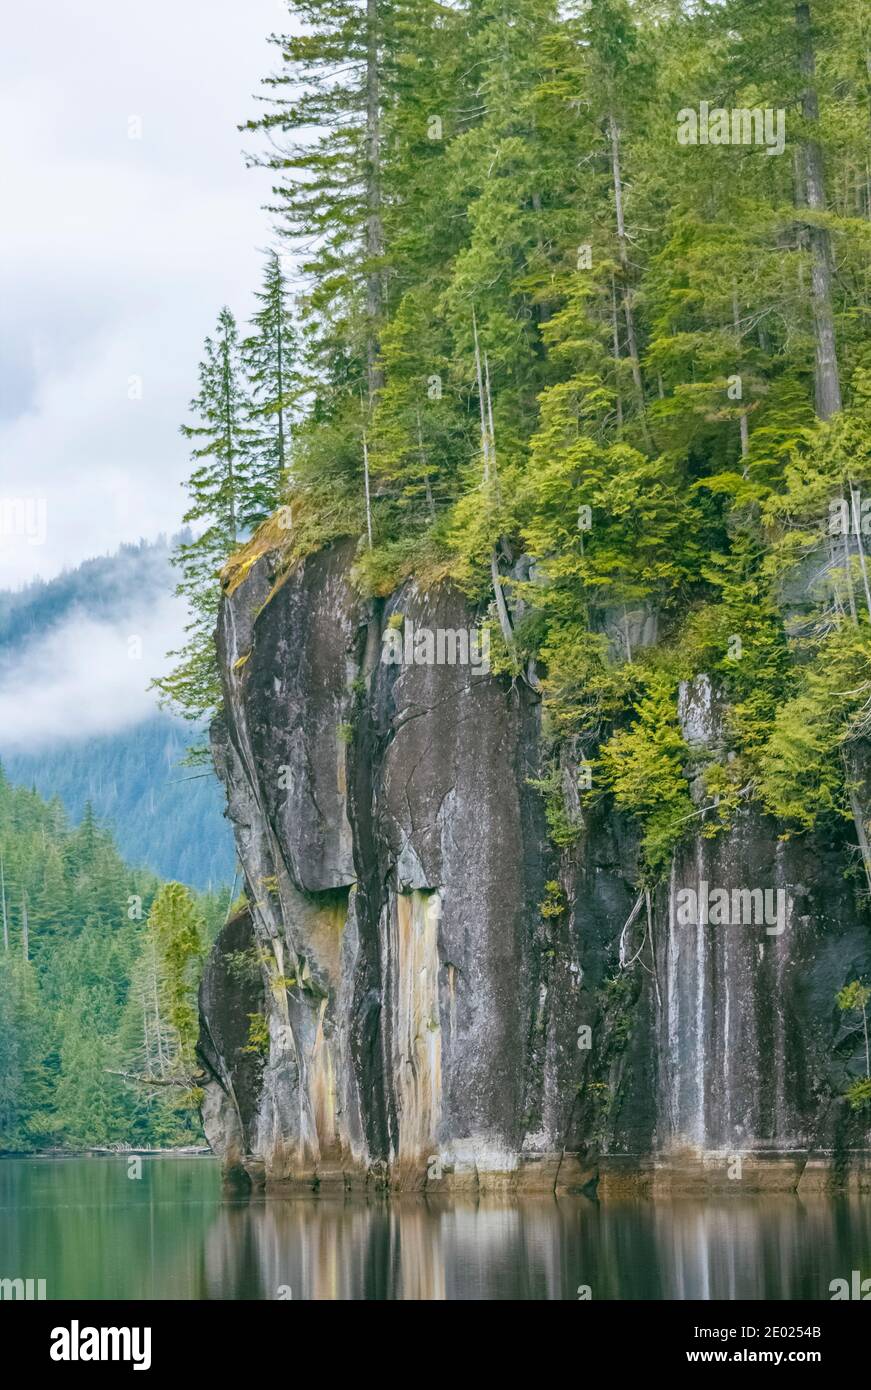 Der dichte Küstenregenwald wächst auf steilen, dunklen Granitfelsen, die sich direkt vom Wasser im abgelegenen Alison Sound, British Columbia, erheben. Stockfoto